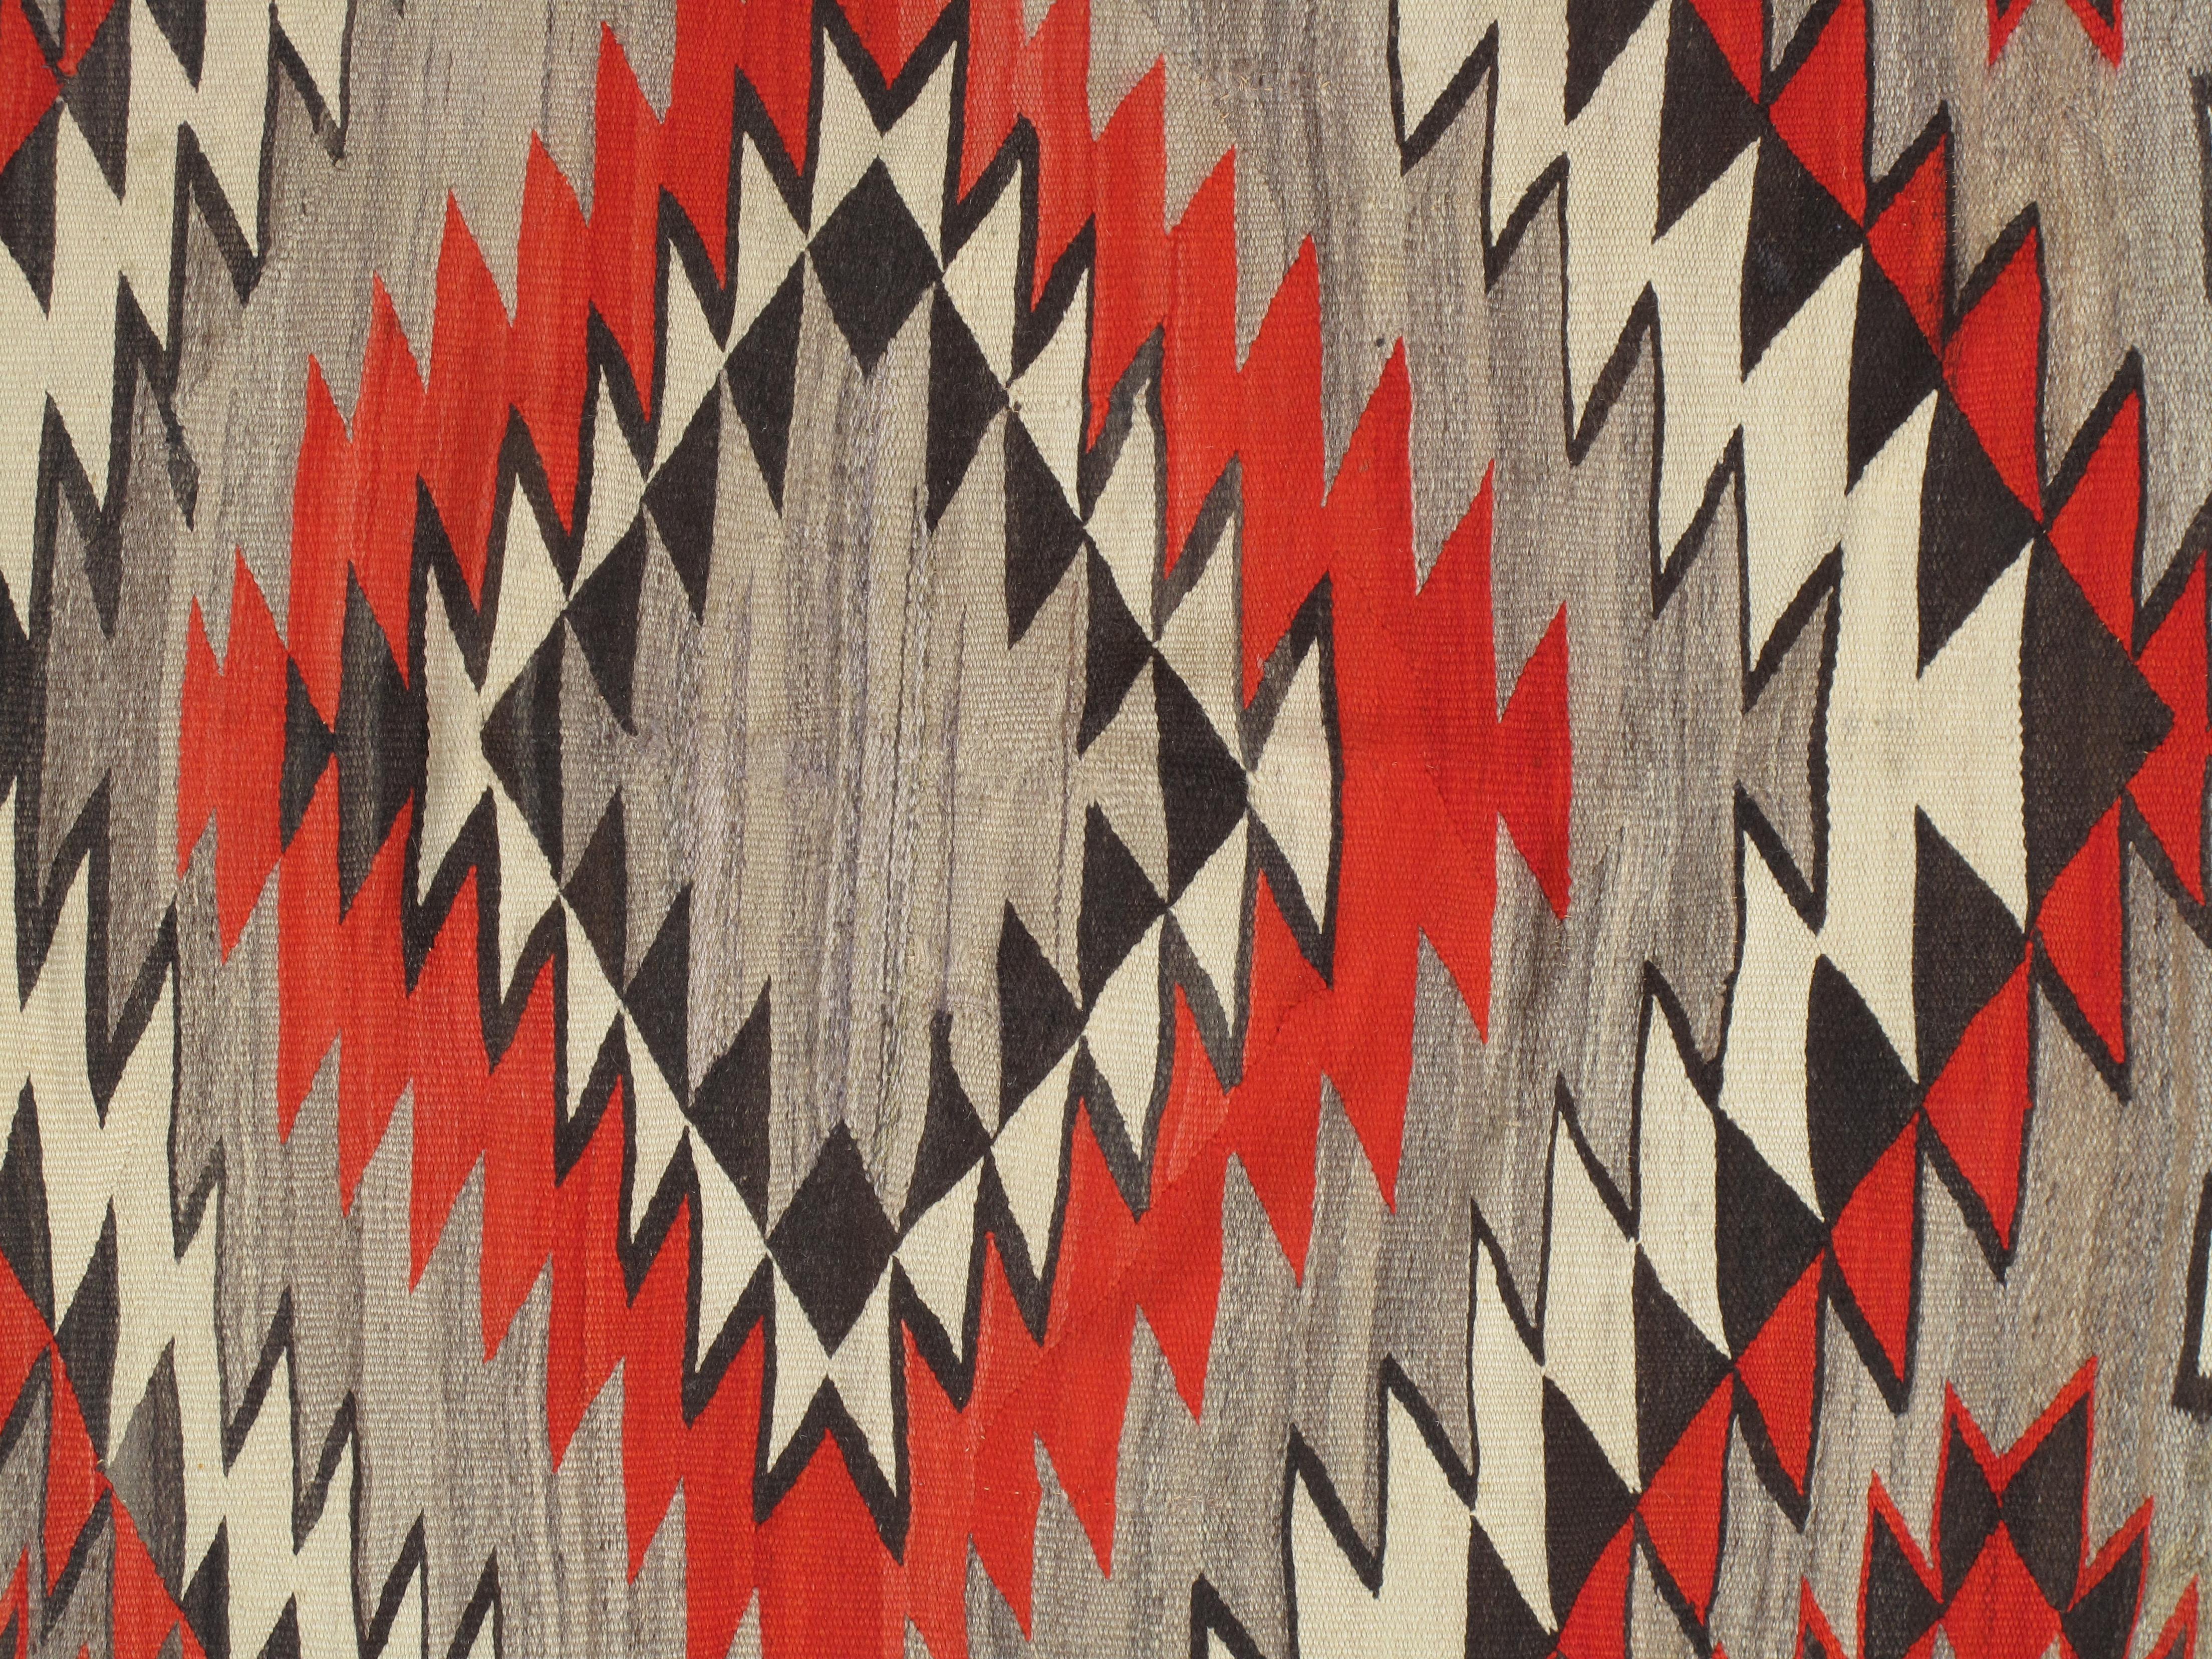 Les tapis et couvertures Navajo sont des textiles produits par le peuple Navajo de la région des quatre coins des États-Unis. Les textiles Navajo sont très appréciés et sont recherchés comme articles de commerce depuis plus de 150 ans. Ces tapis et